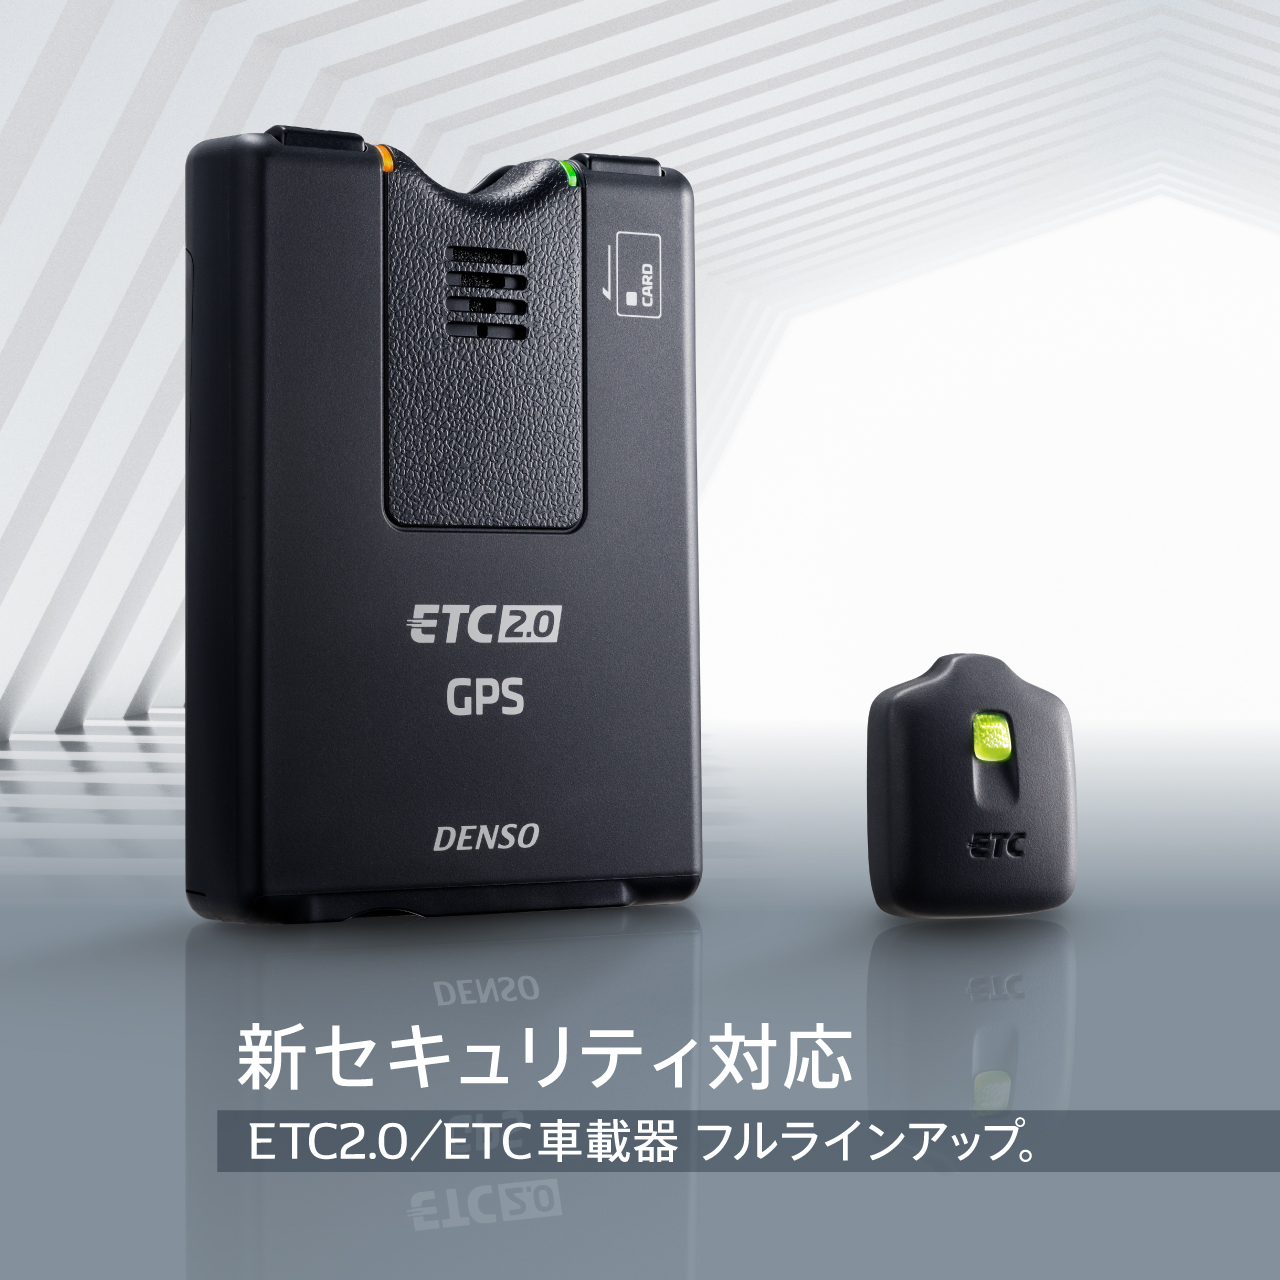 新セキュリティ対応 ETC2.0/ETC車載器 フルラインアップ。